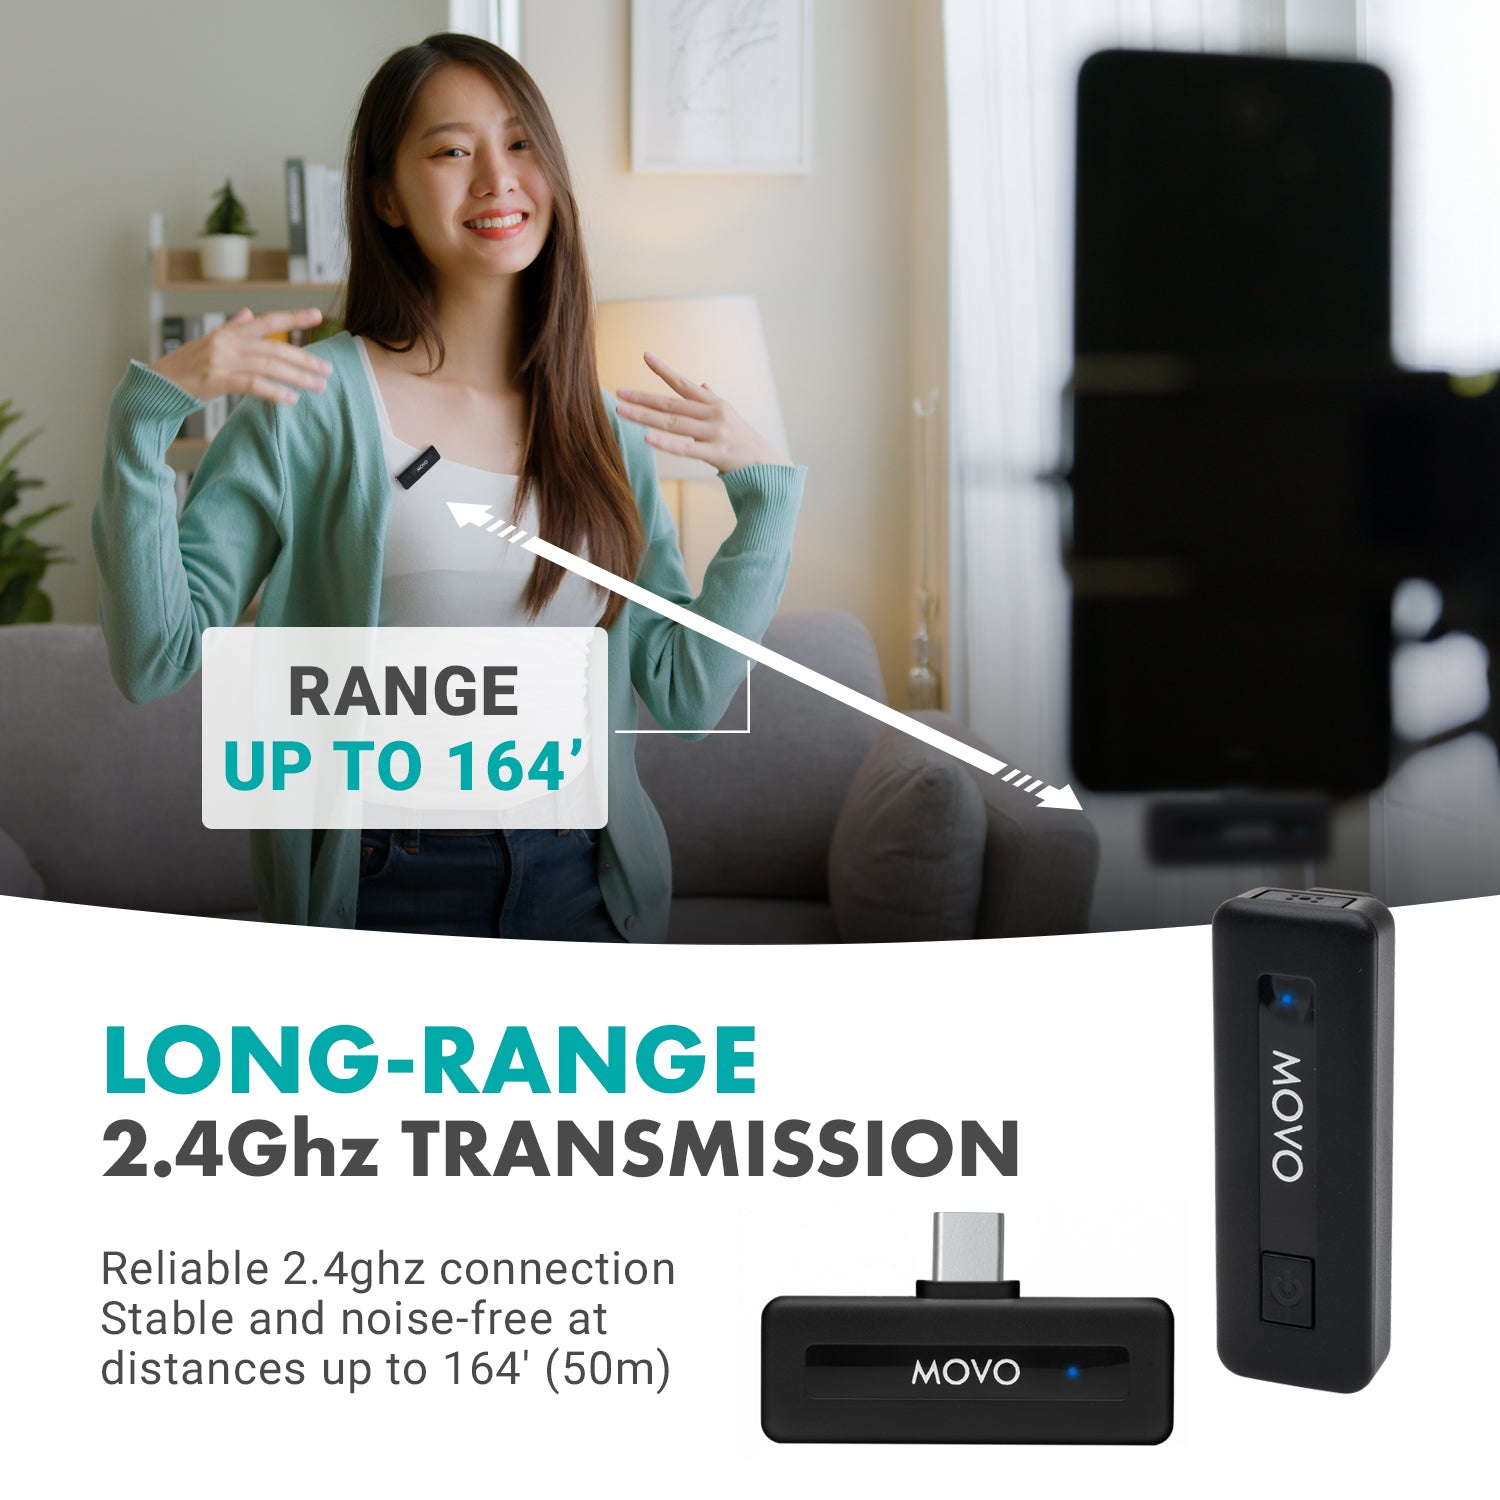 Movo Wireless Mini UC DUO-IP | Dual Mini Wireless Mic for iPhone 15